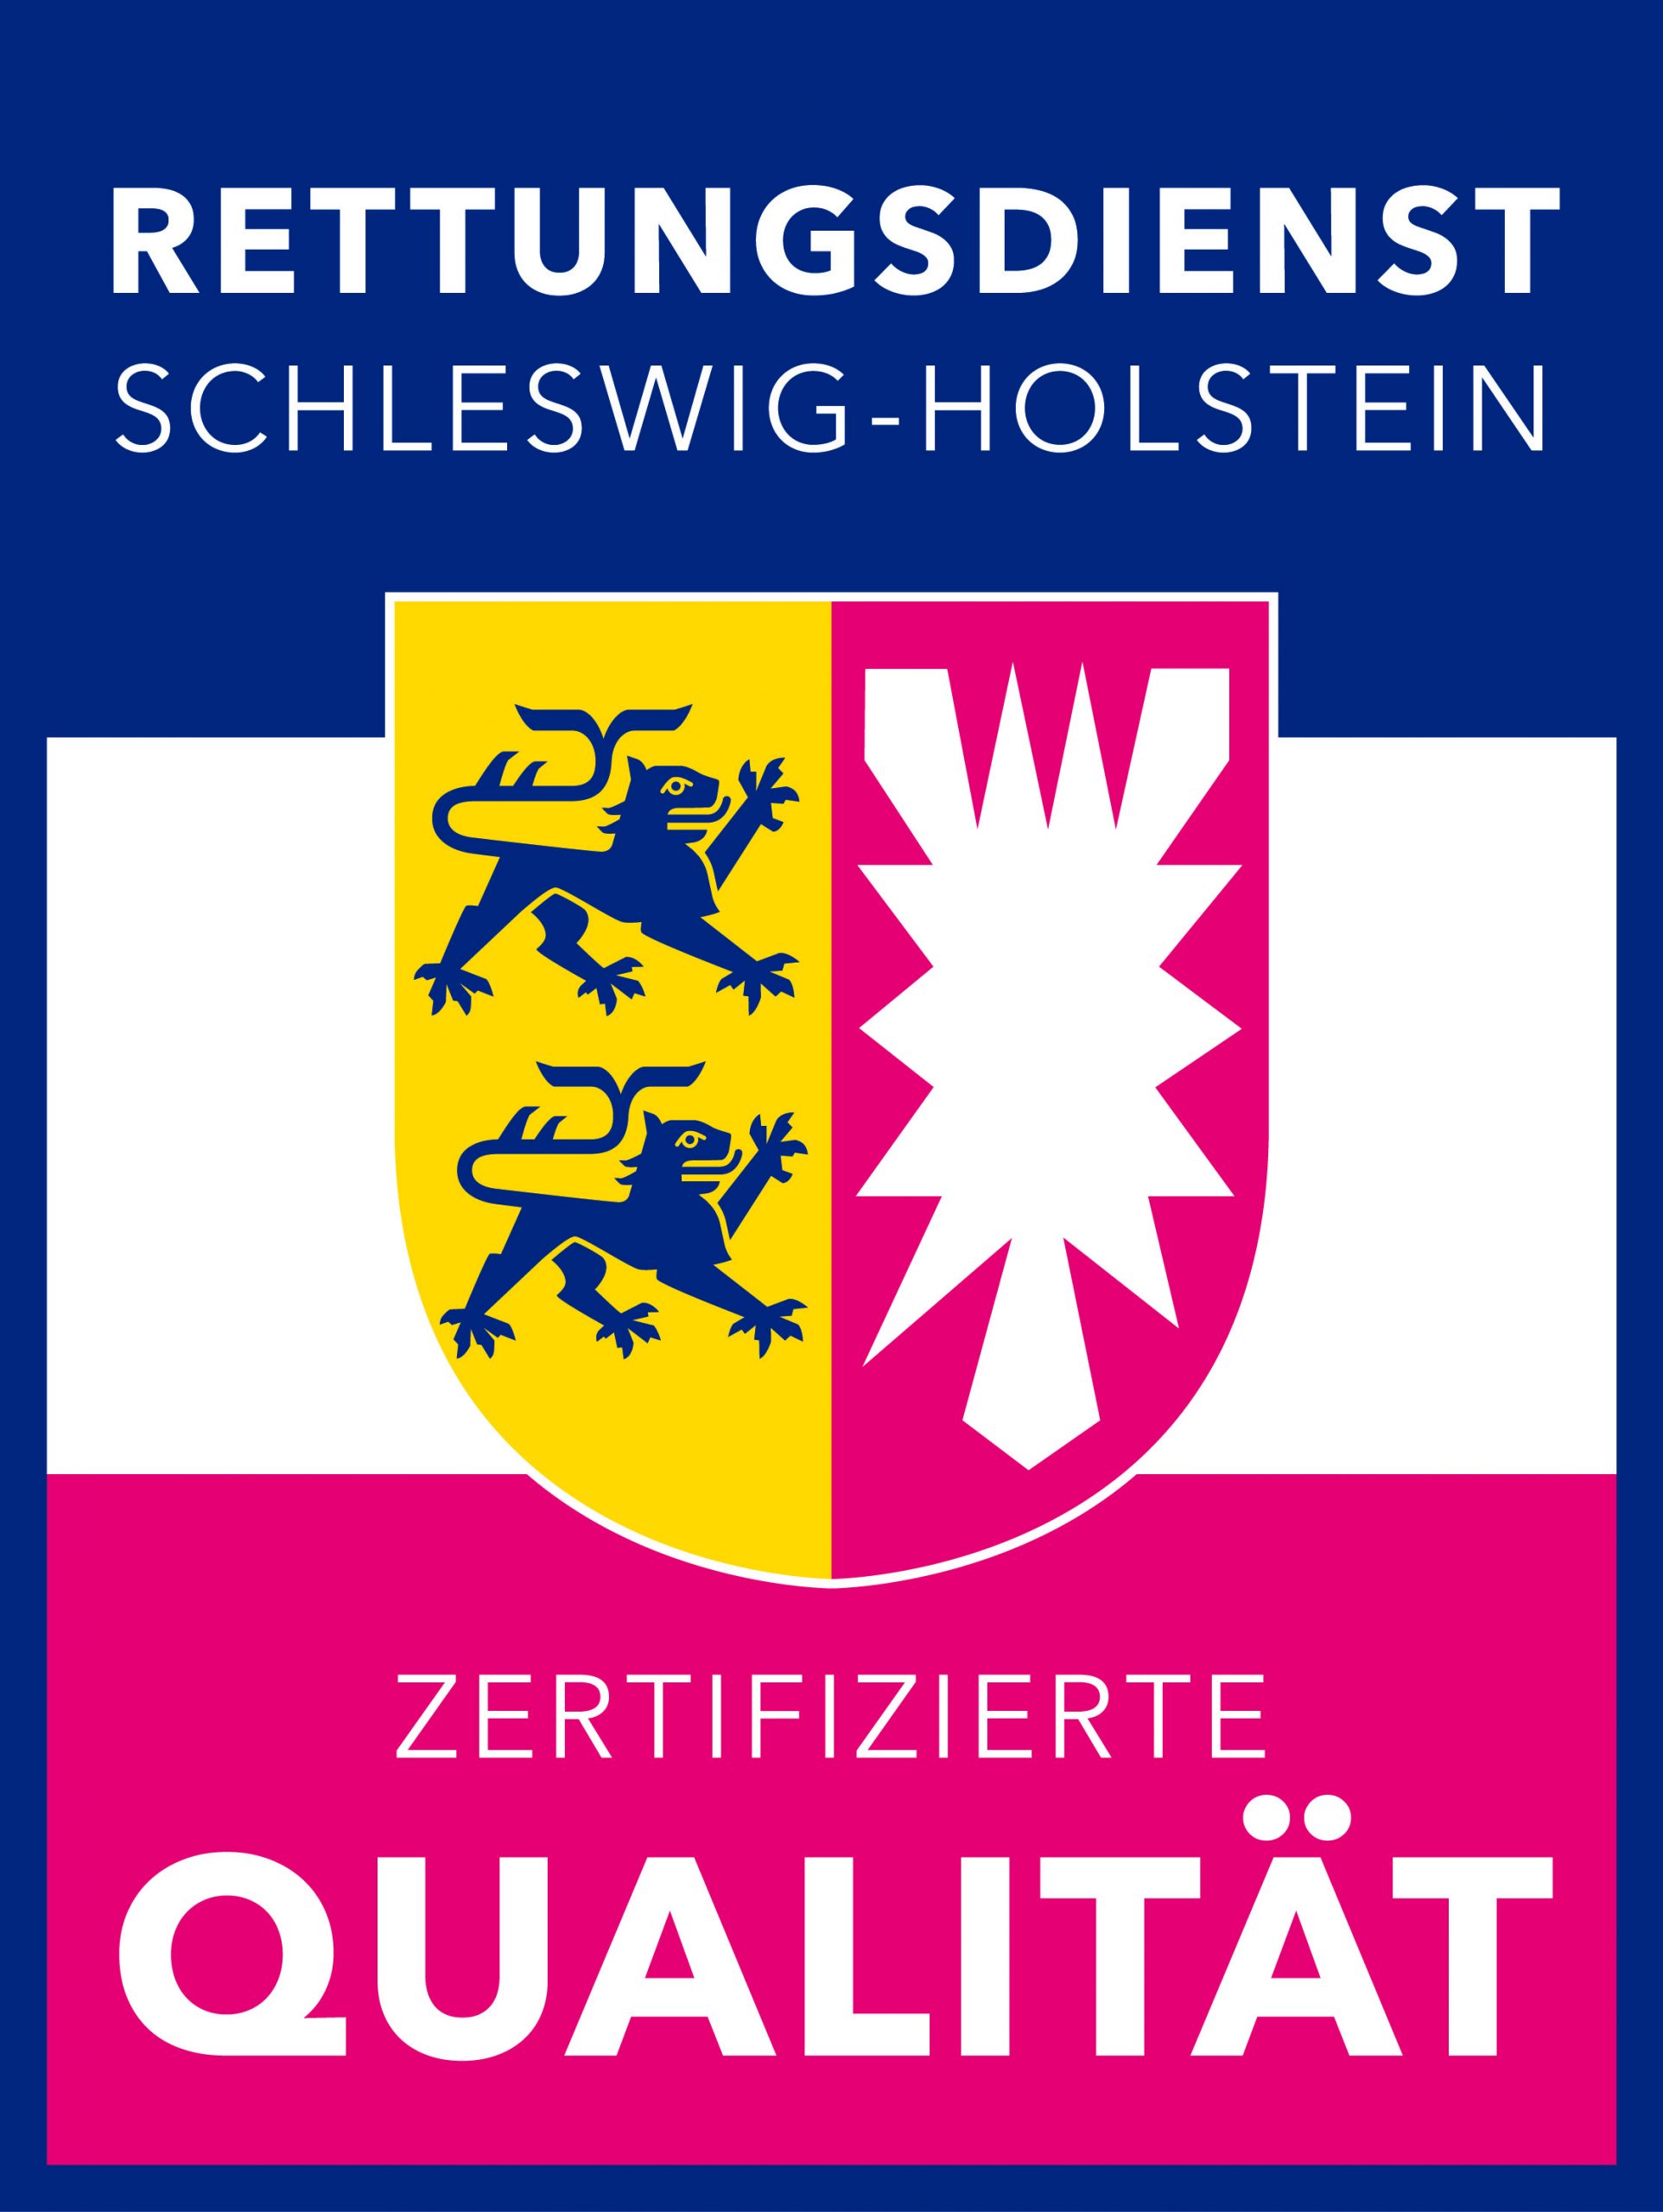 Bild des Qualitätssigels für den Rettungsdienst Schleswig-Holstein